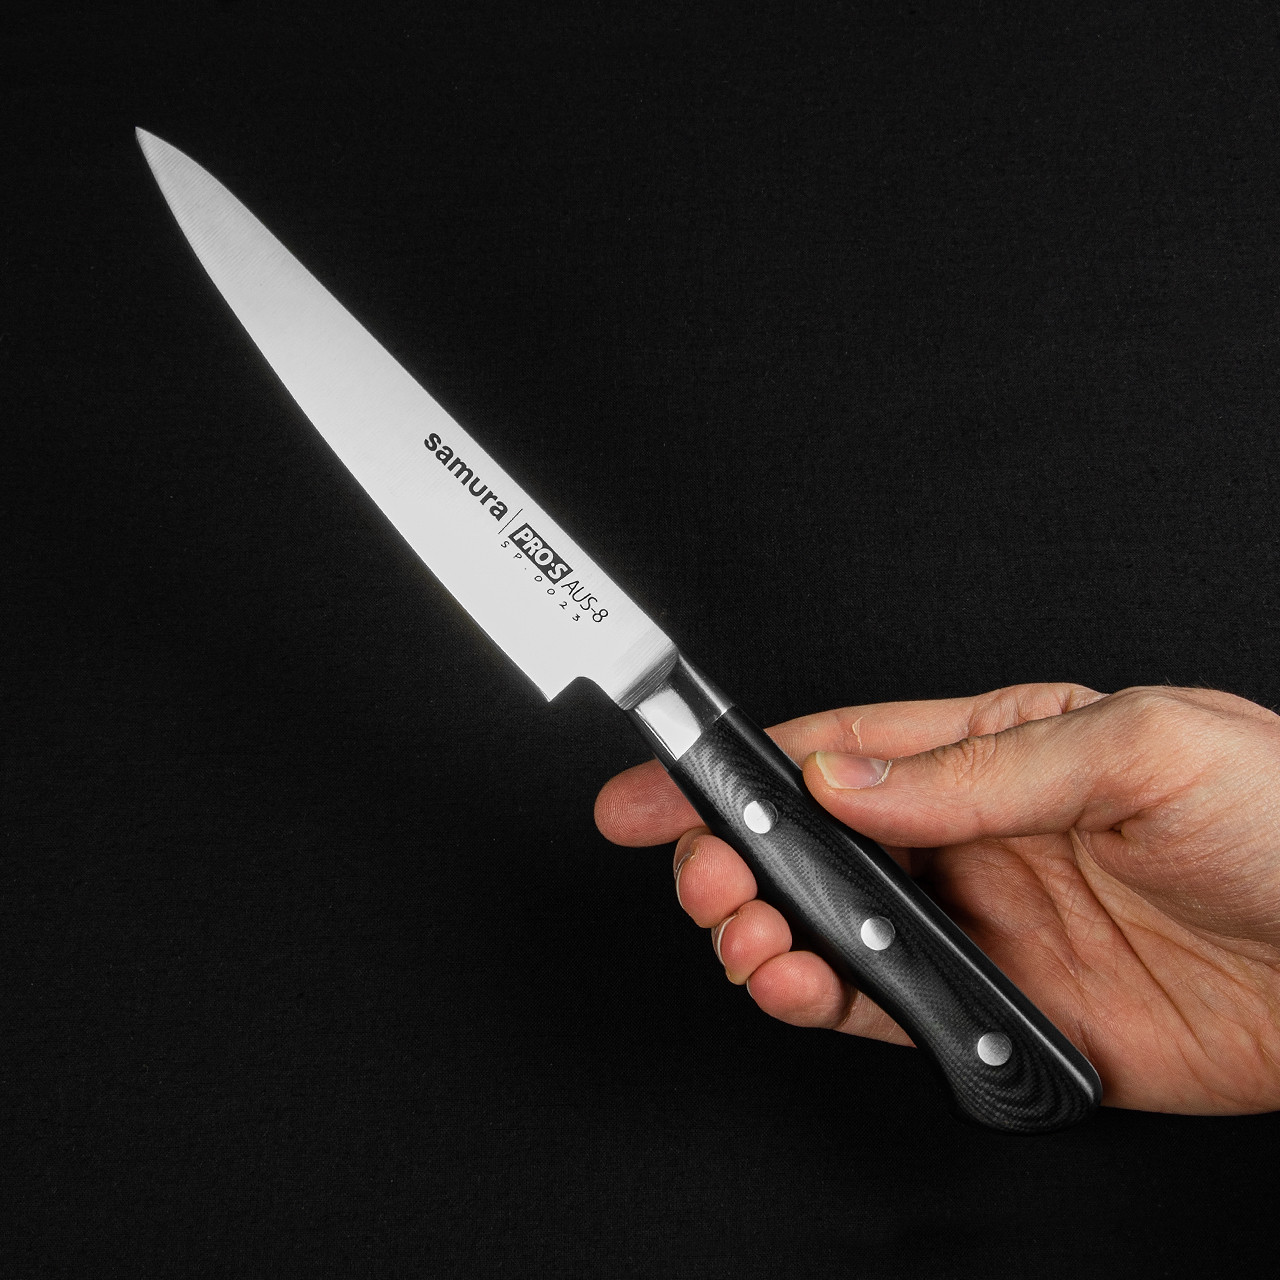 Samura PRO-S - 3 knives Kitchen Knife Set